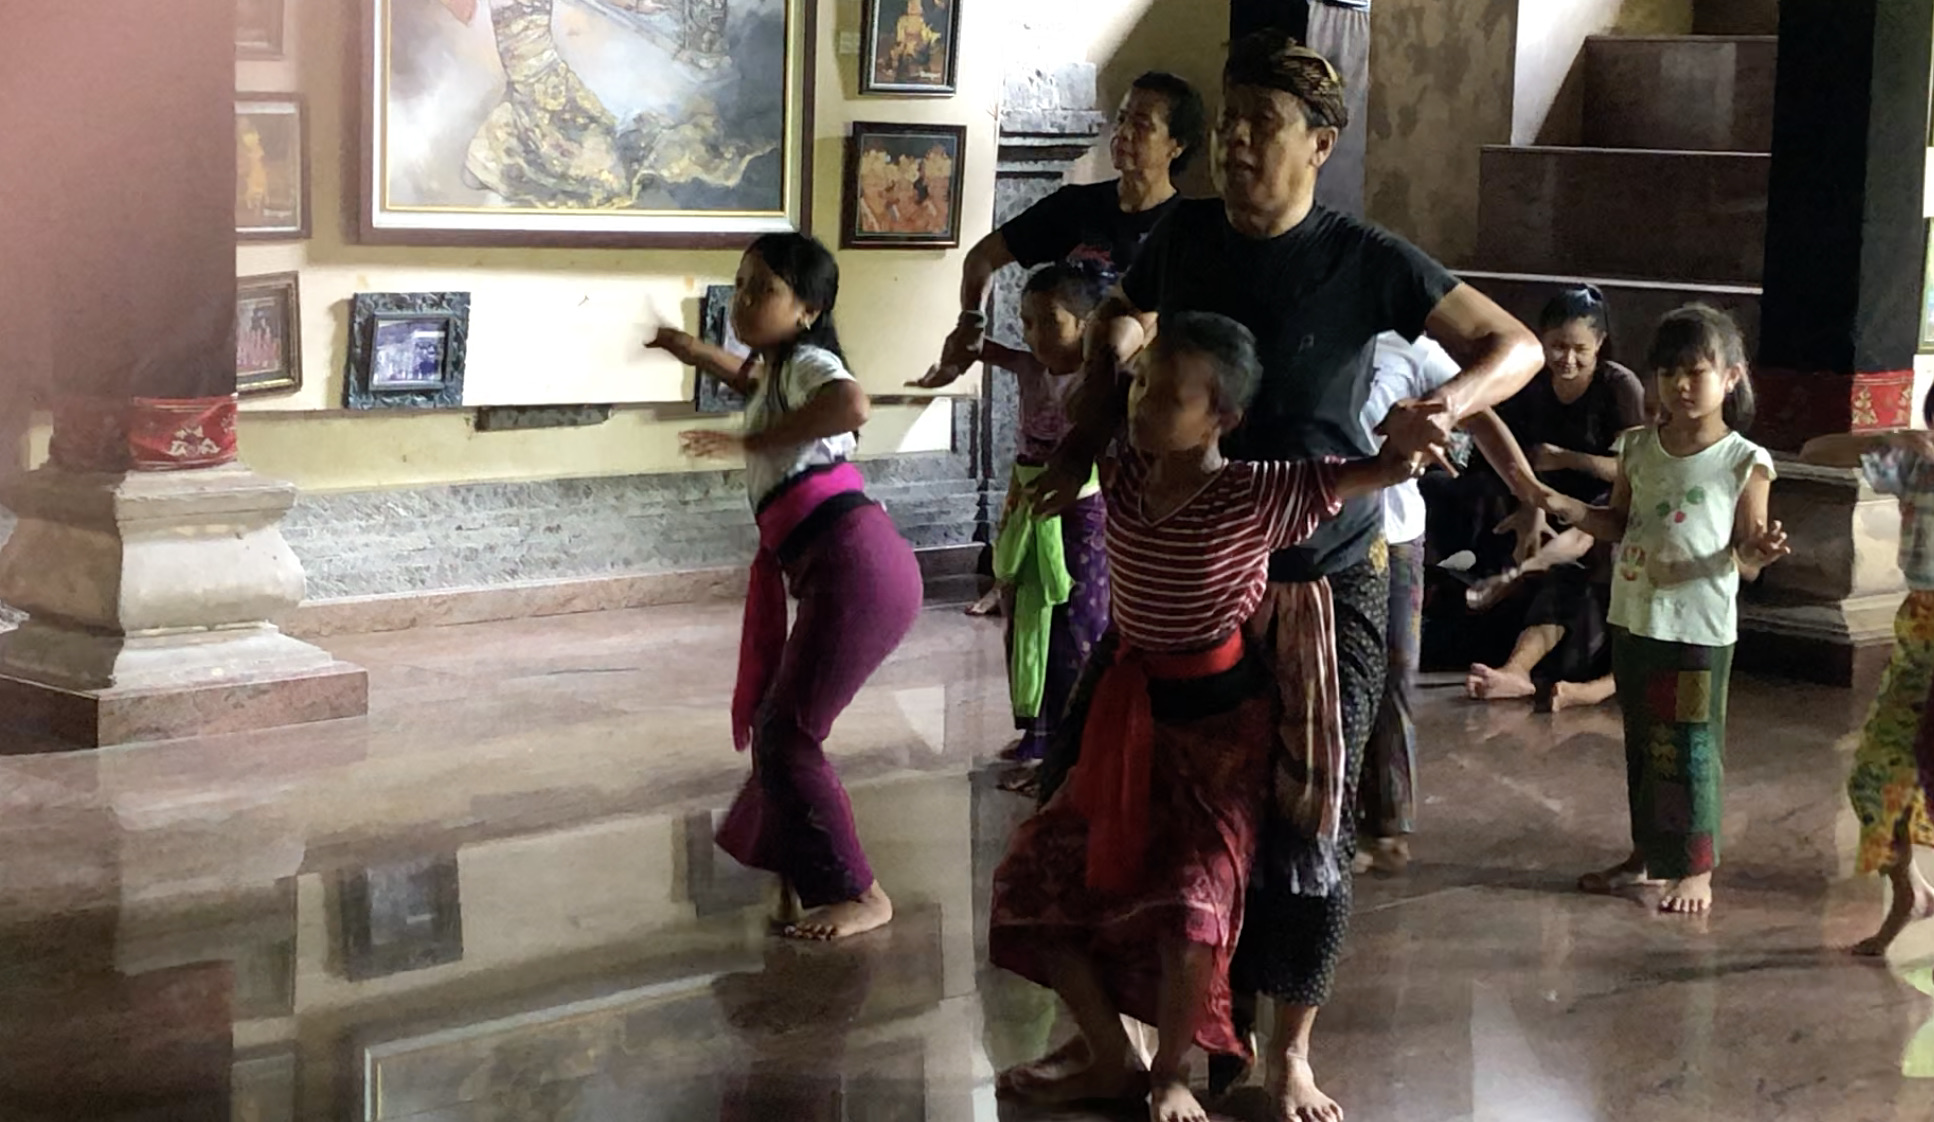 活動制限が緩和され、村の子供達に踊りの指導ができるようになりました